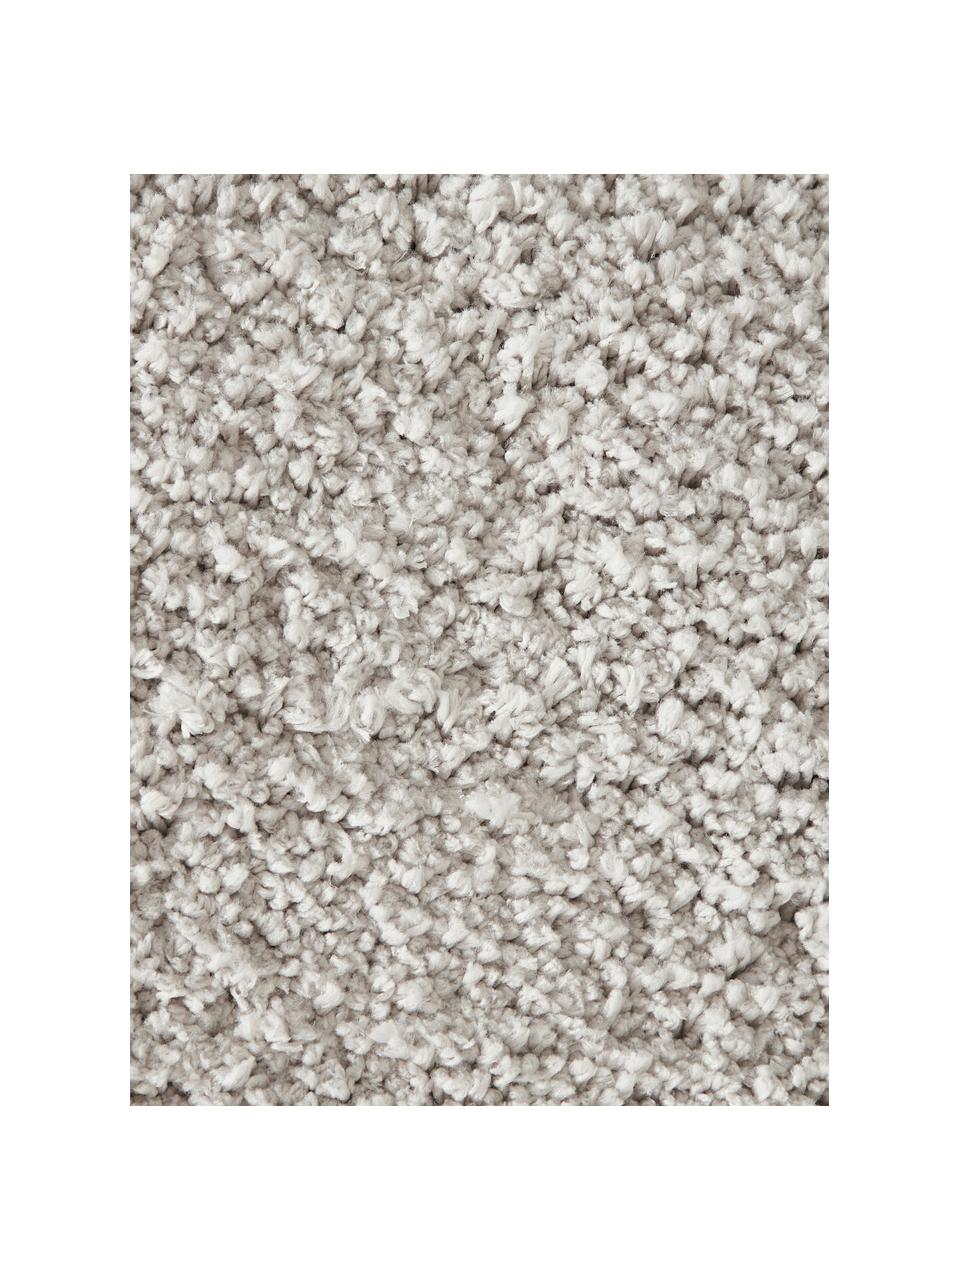 Flauschiger runder Hochflor-Teppich Leighton, Flor: Mikrofaser (100% Polyeste, Hellgrau, Ø 120 cm (Grösse S)